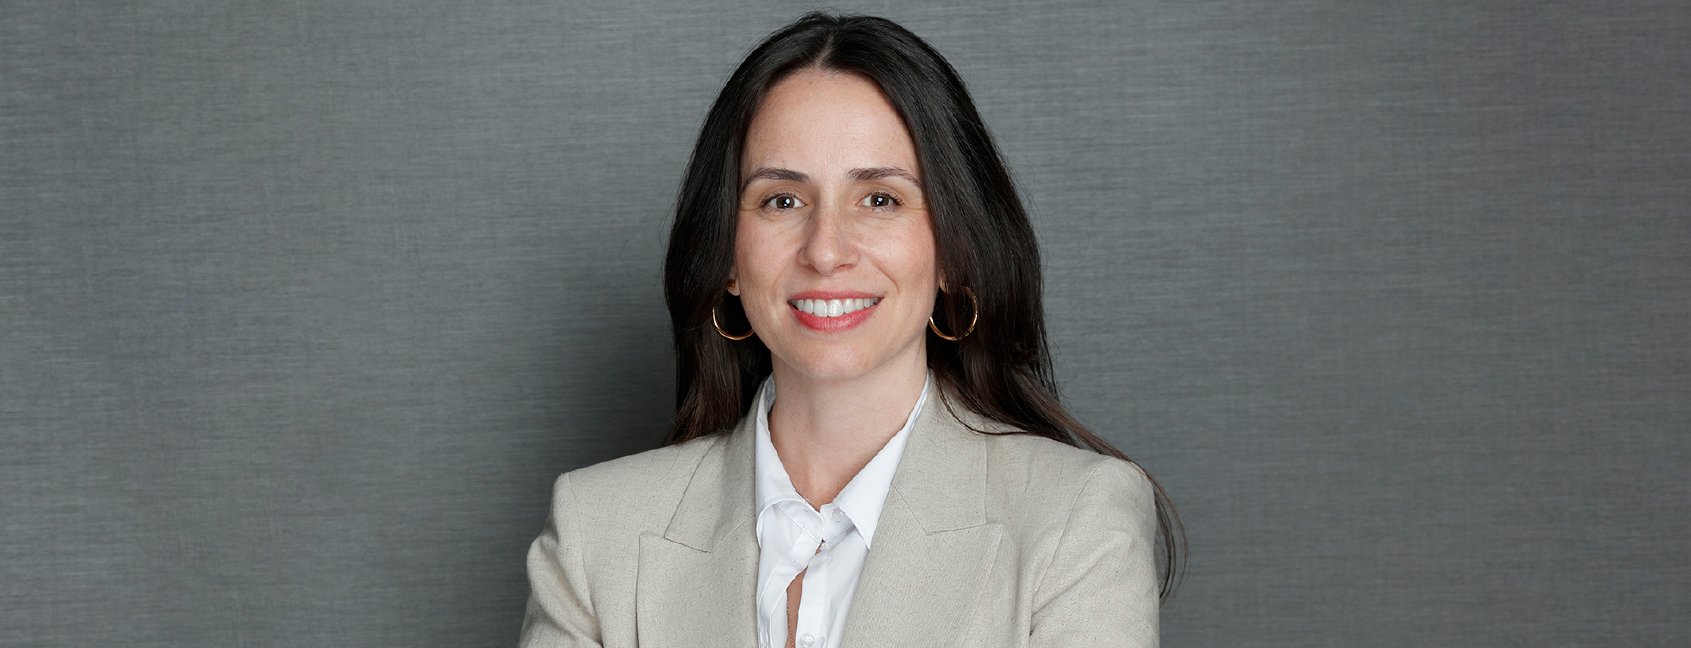 Gemma Gutiérrez, nova Diretora-Geral de Marketing Solutions para a LLYC Europa